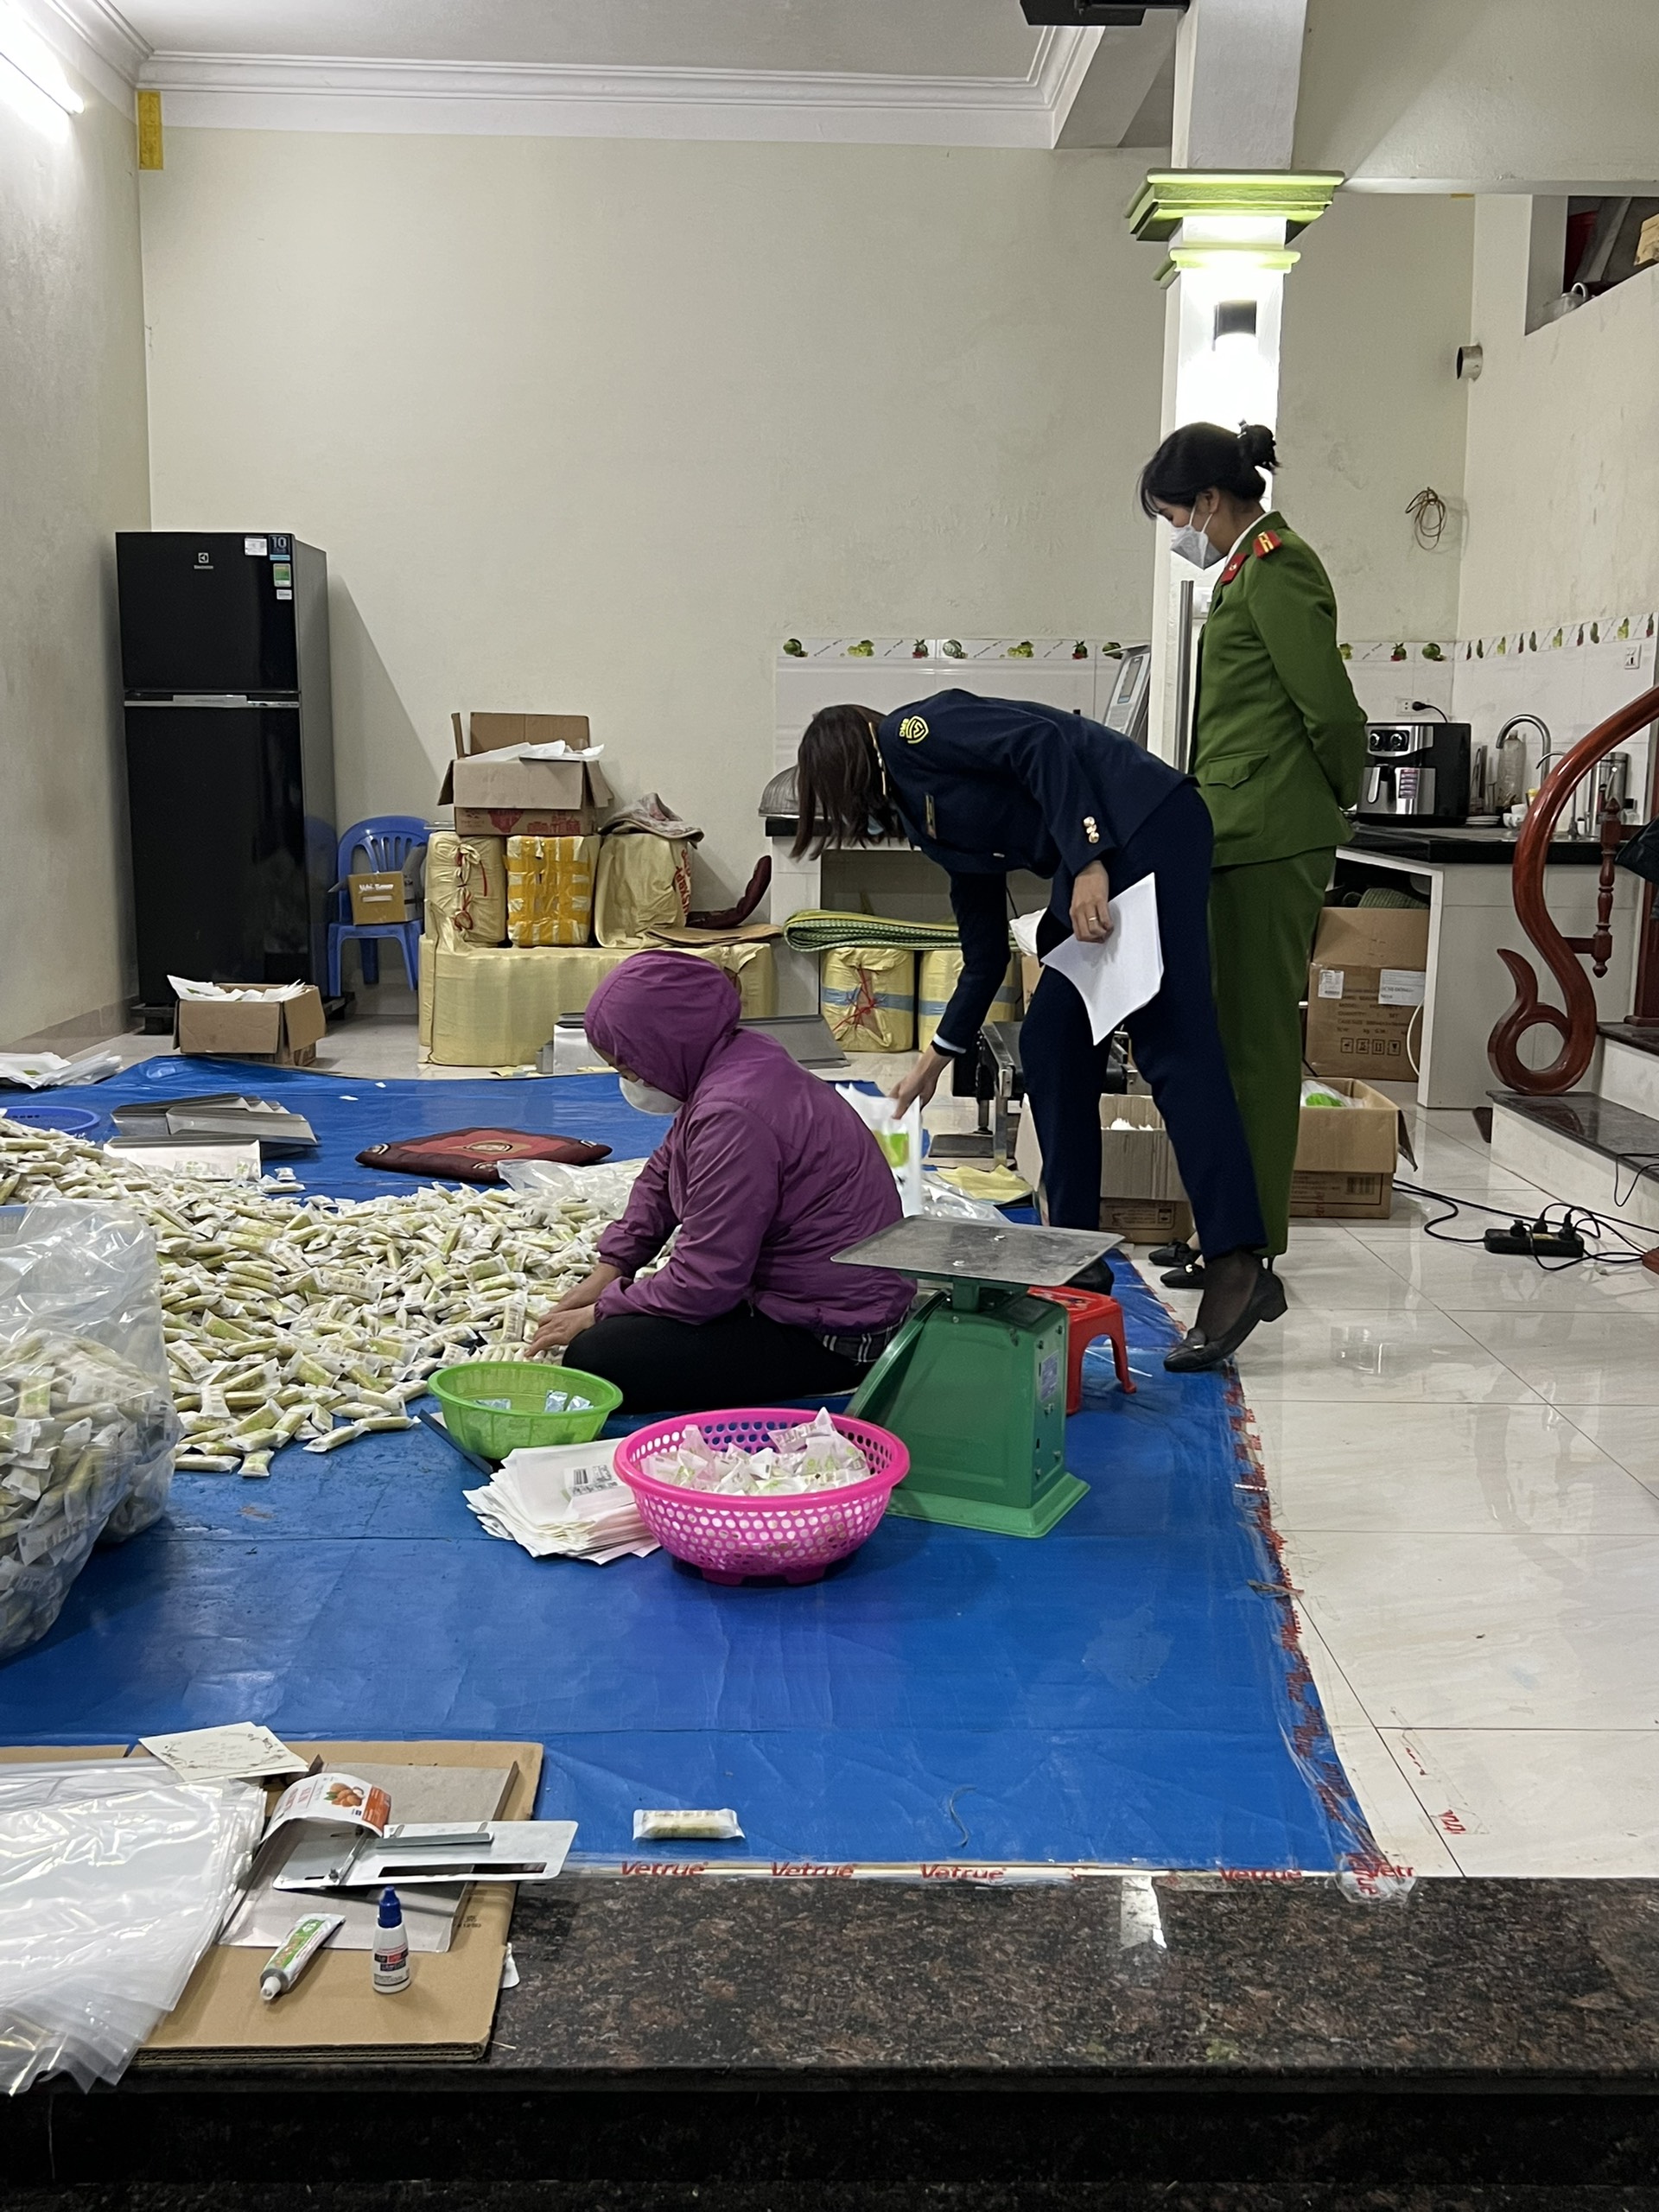 Đoàn kiểm tra tạm giữ 85 kg bánh gạo không rõ nguồn gốc xuất xứ, giả mạo bánh gạo Vetrue xuất xứ Nhật Bản 